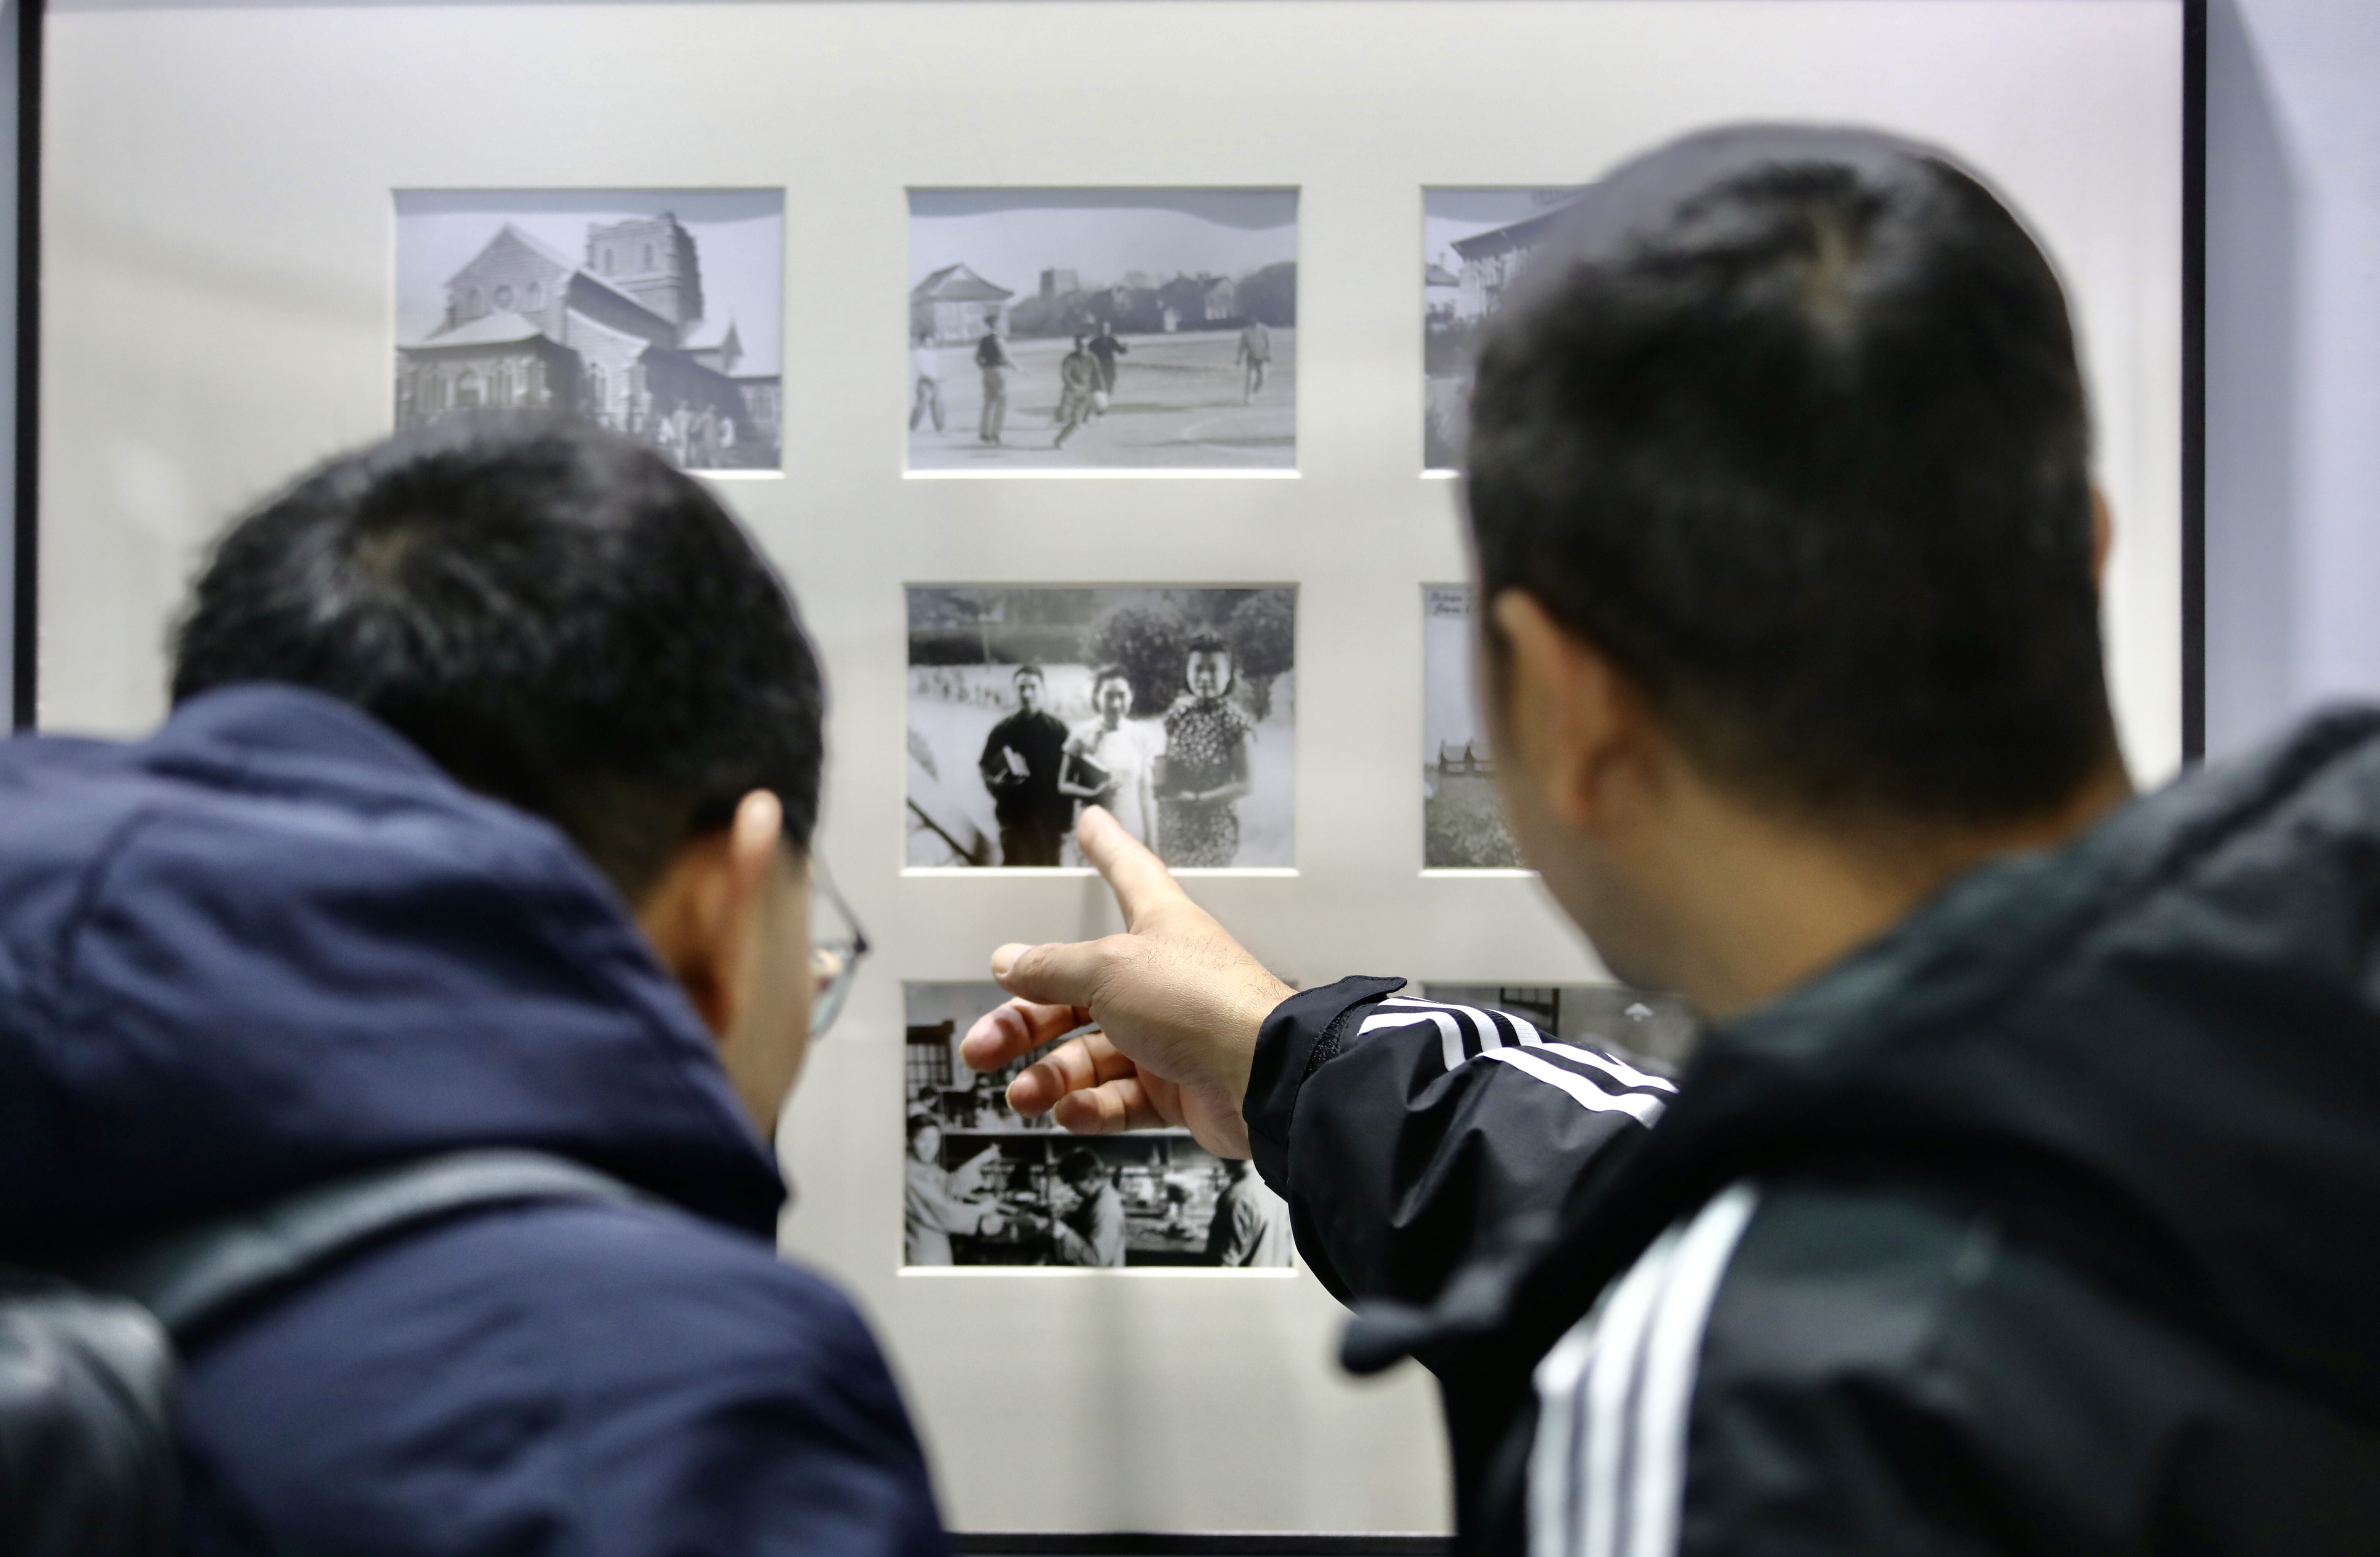 济南记忆影像保护工程典藏作品展正式展出 老照片架起记忆桥 家事国事入梦来